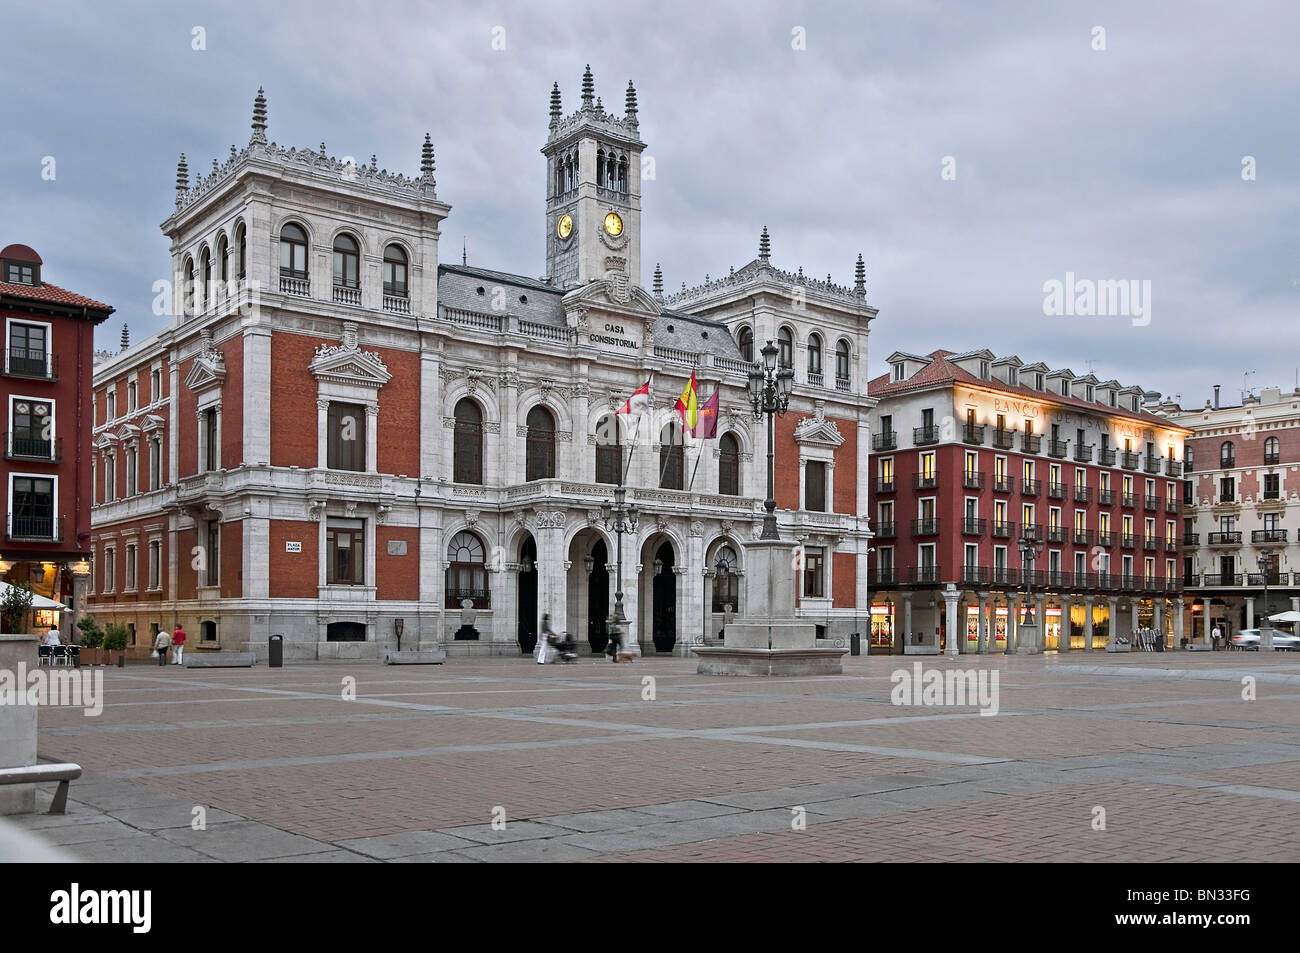 Hôtel de ville, le style éclectique de l'édifice du xixe siècle, dans la Plaza Mayor de la ville de Valladolid, Castille et Leon, Espagne. Banque D'Images